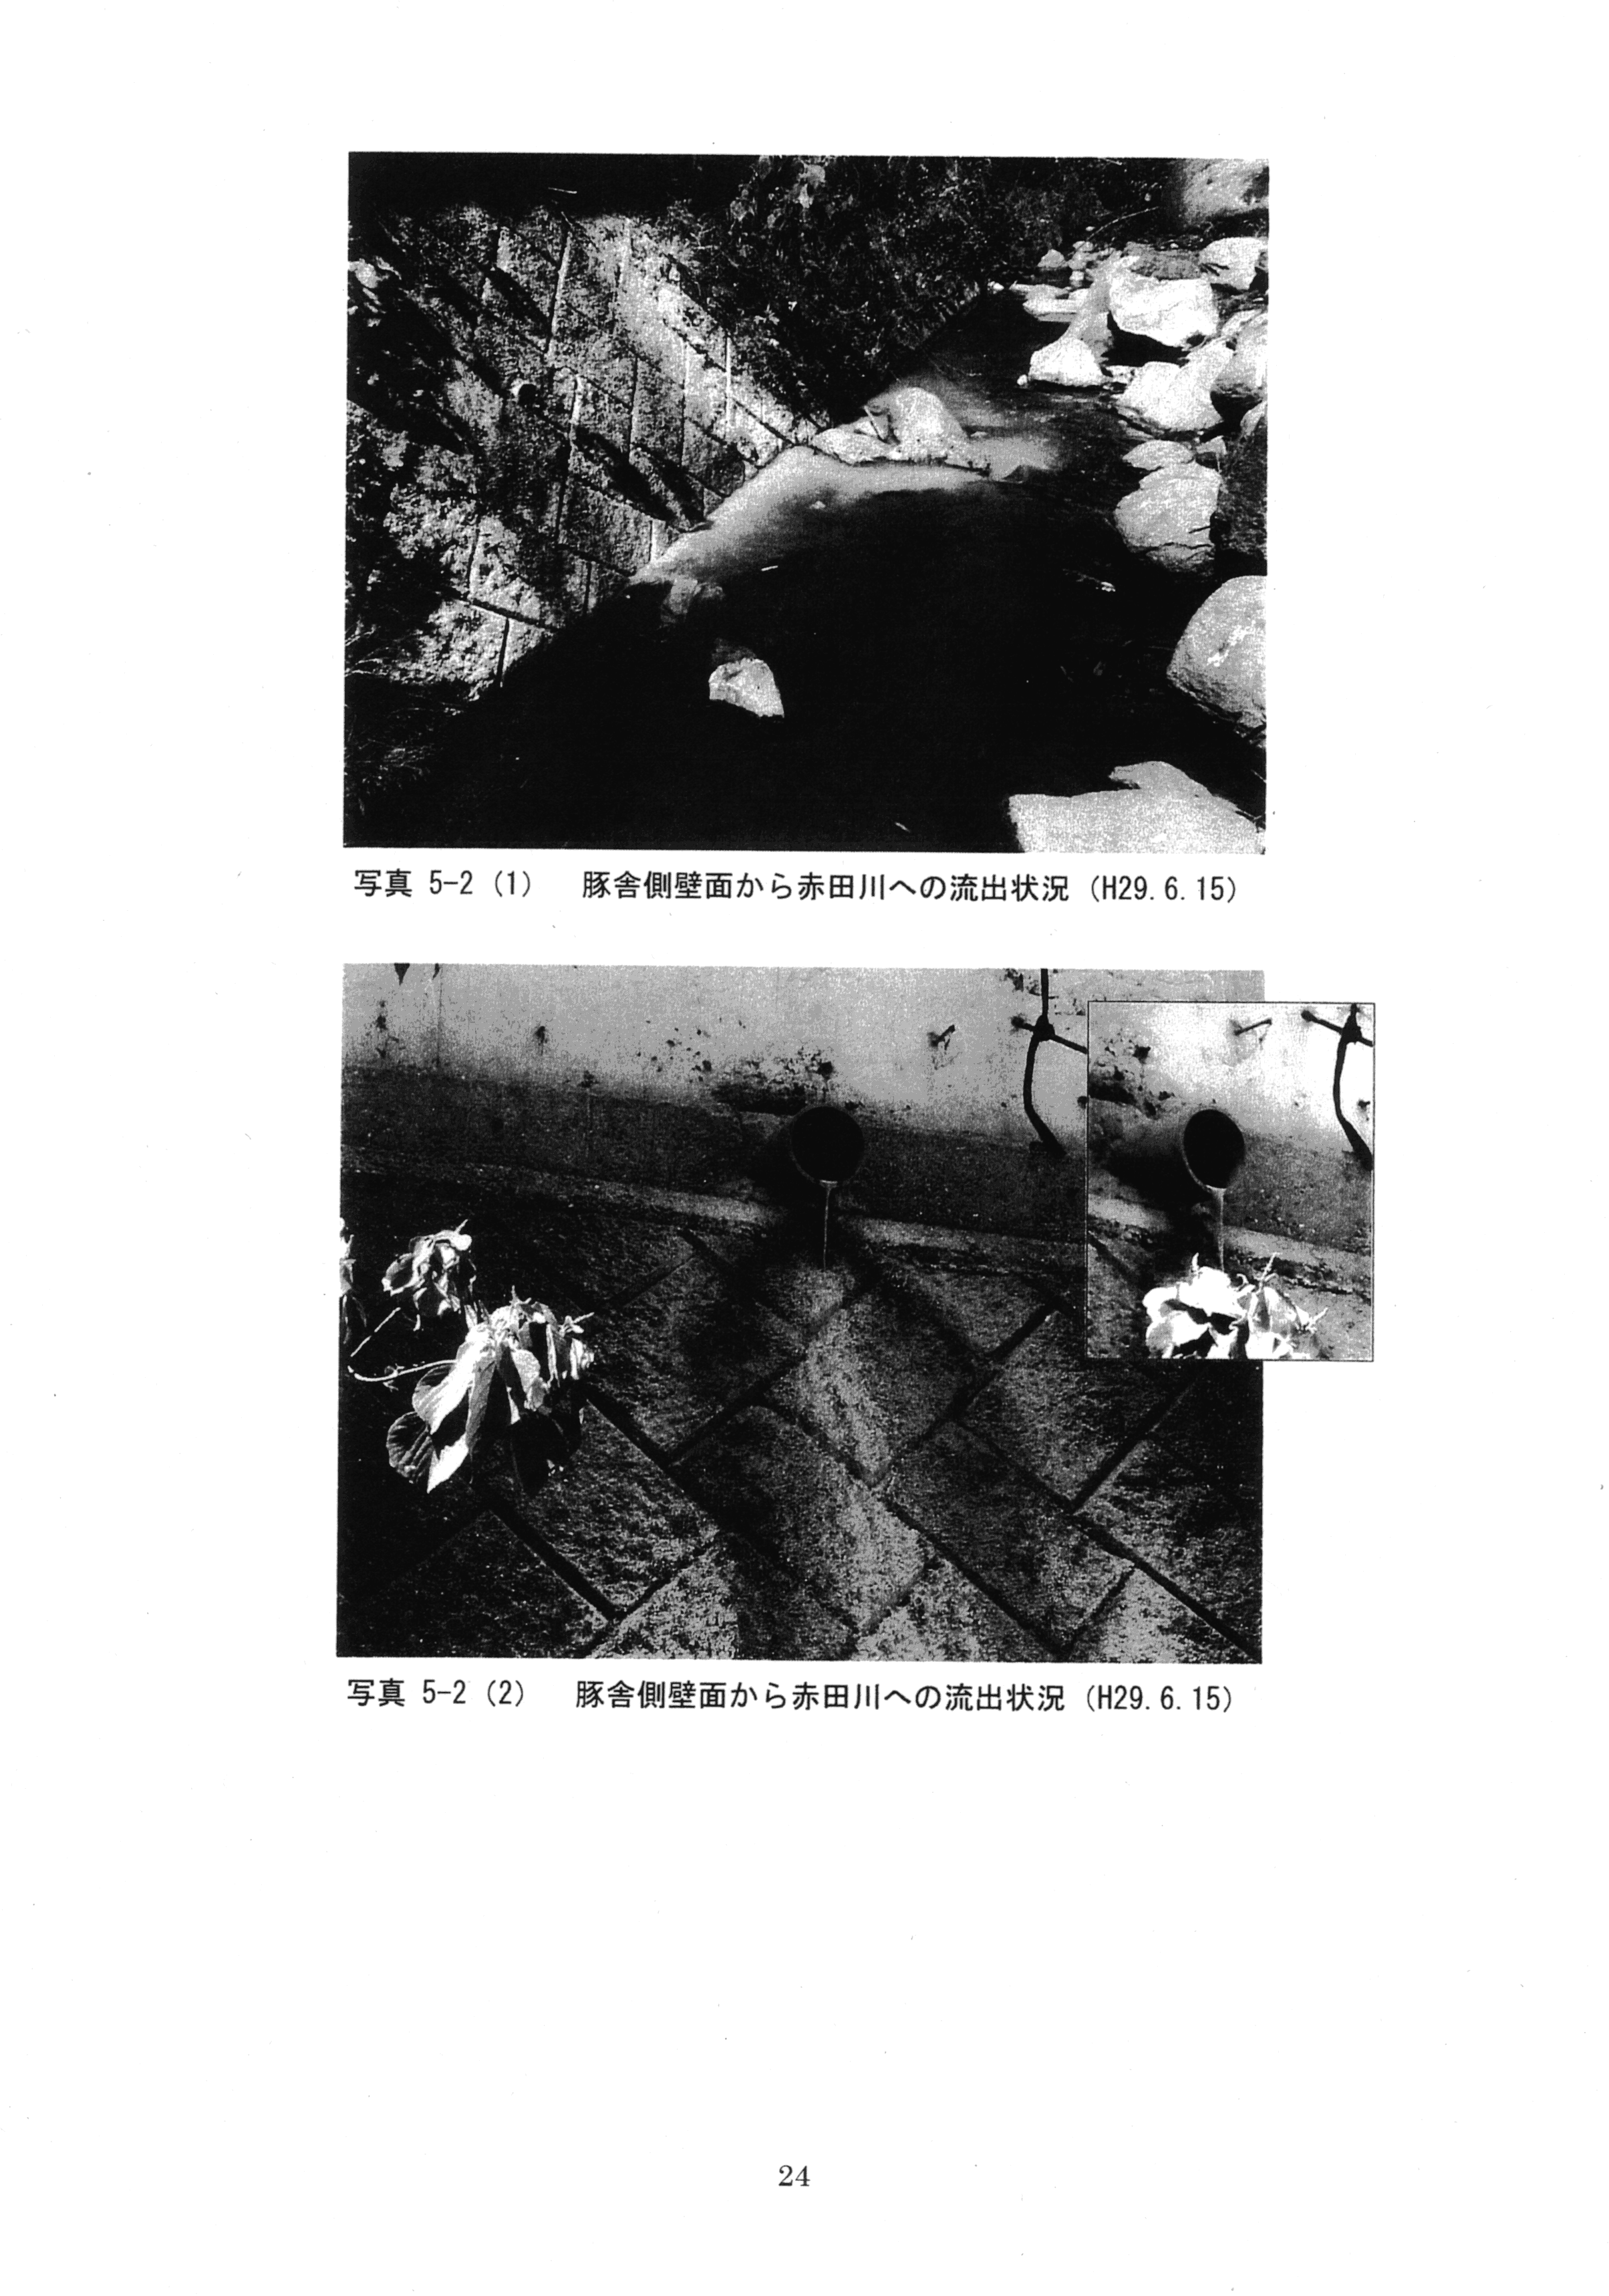 平成29年11月-赤田川水質汚濁状況調査報告書-26